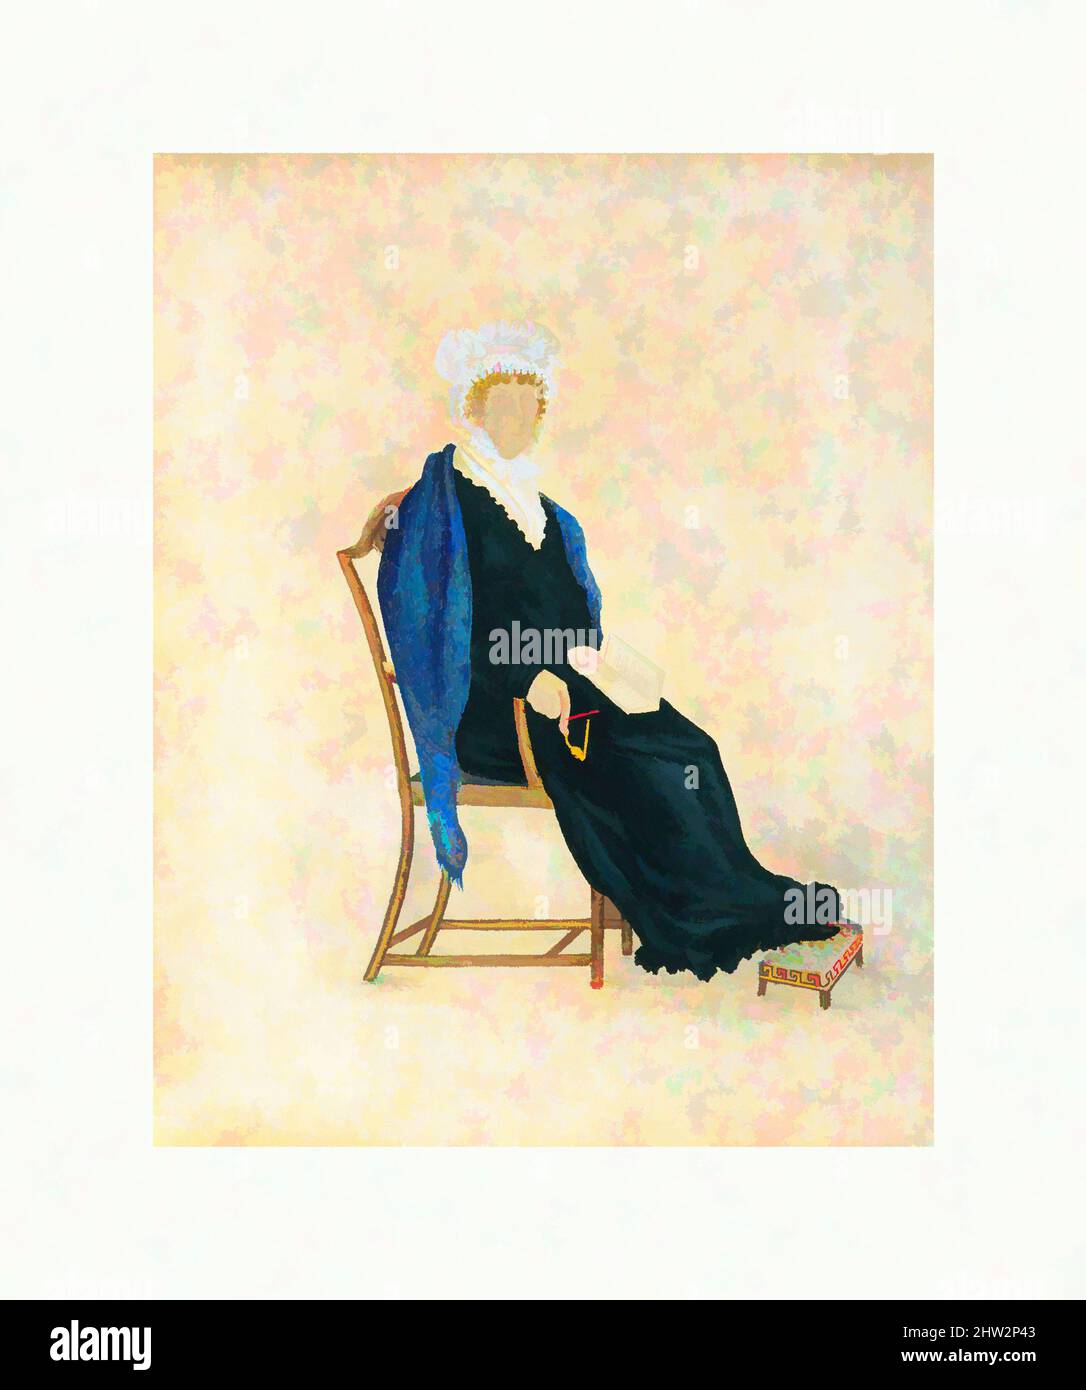 Art inspiré par Portrait de Mme Crofts, ca. 1815–30, probablement fabriqué en Pennsylvanie, États-Unis, aquarelle, graphite, gomme arabique, shee (liquide) or, et gouache sur papier vélin blanc cassé (maintenant oxydé), 10 x 8 po. (25,4 x 20,3 cm), dessins, oeuvres classiques modernisées par Artotop avec une touche de modernité. Formes, couleur et valeur, impact visuel accrocheur sur l'art émotions par la liberté d'œuvres d'art d'une manière contemporaine. Un message intemporel qui cherche une nouvelle direction créative. Artistes qui se tournent vers le support numérique et créent le NFT Artotop Banque D'Images